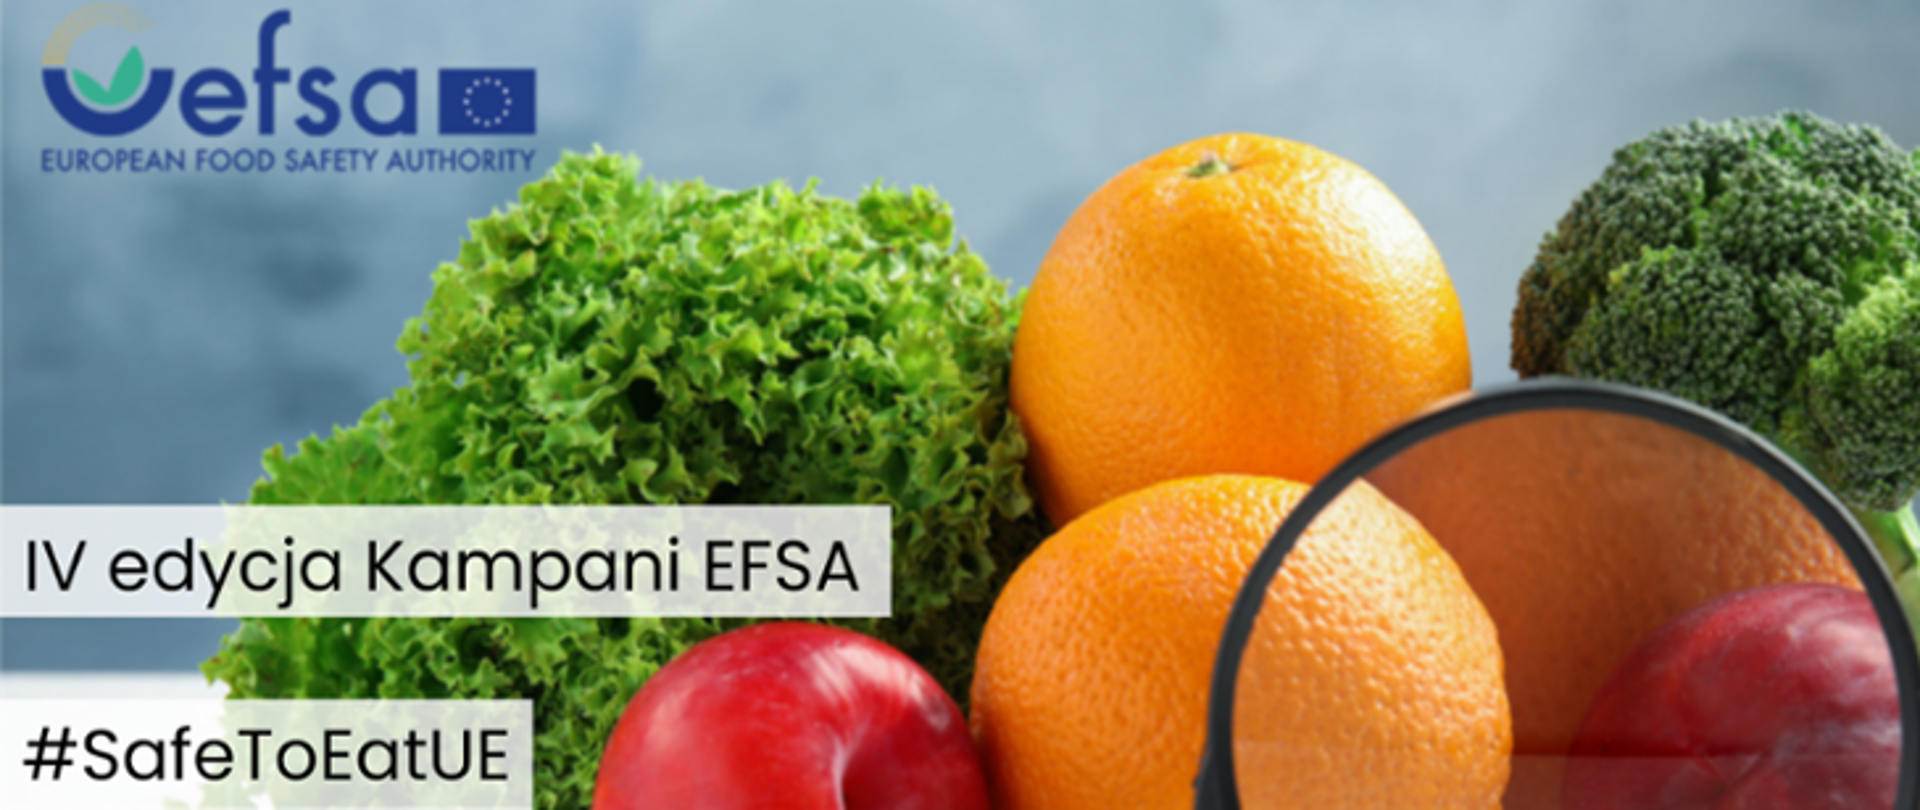 Plakat z napisem IV edycja Kampani EFSA #SafeToEatUE a w tle warzywa i owoce